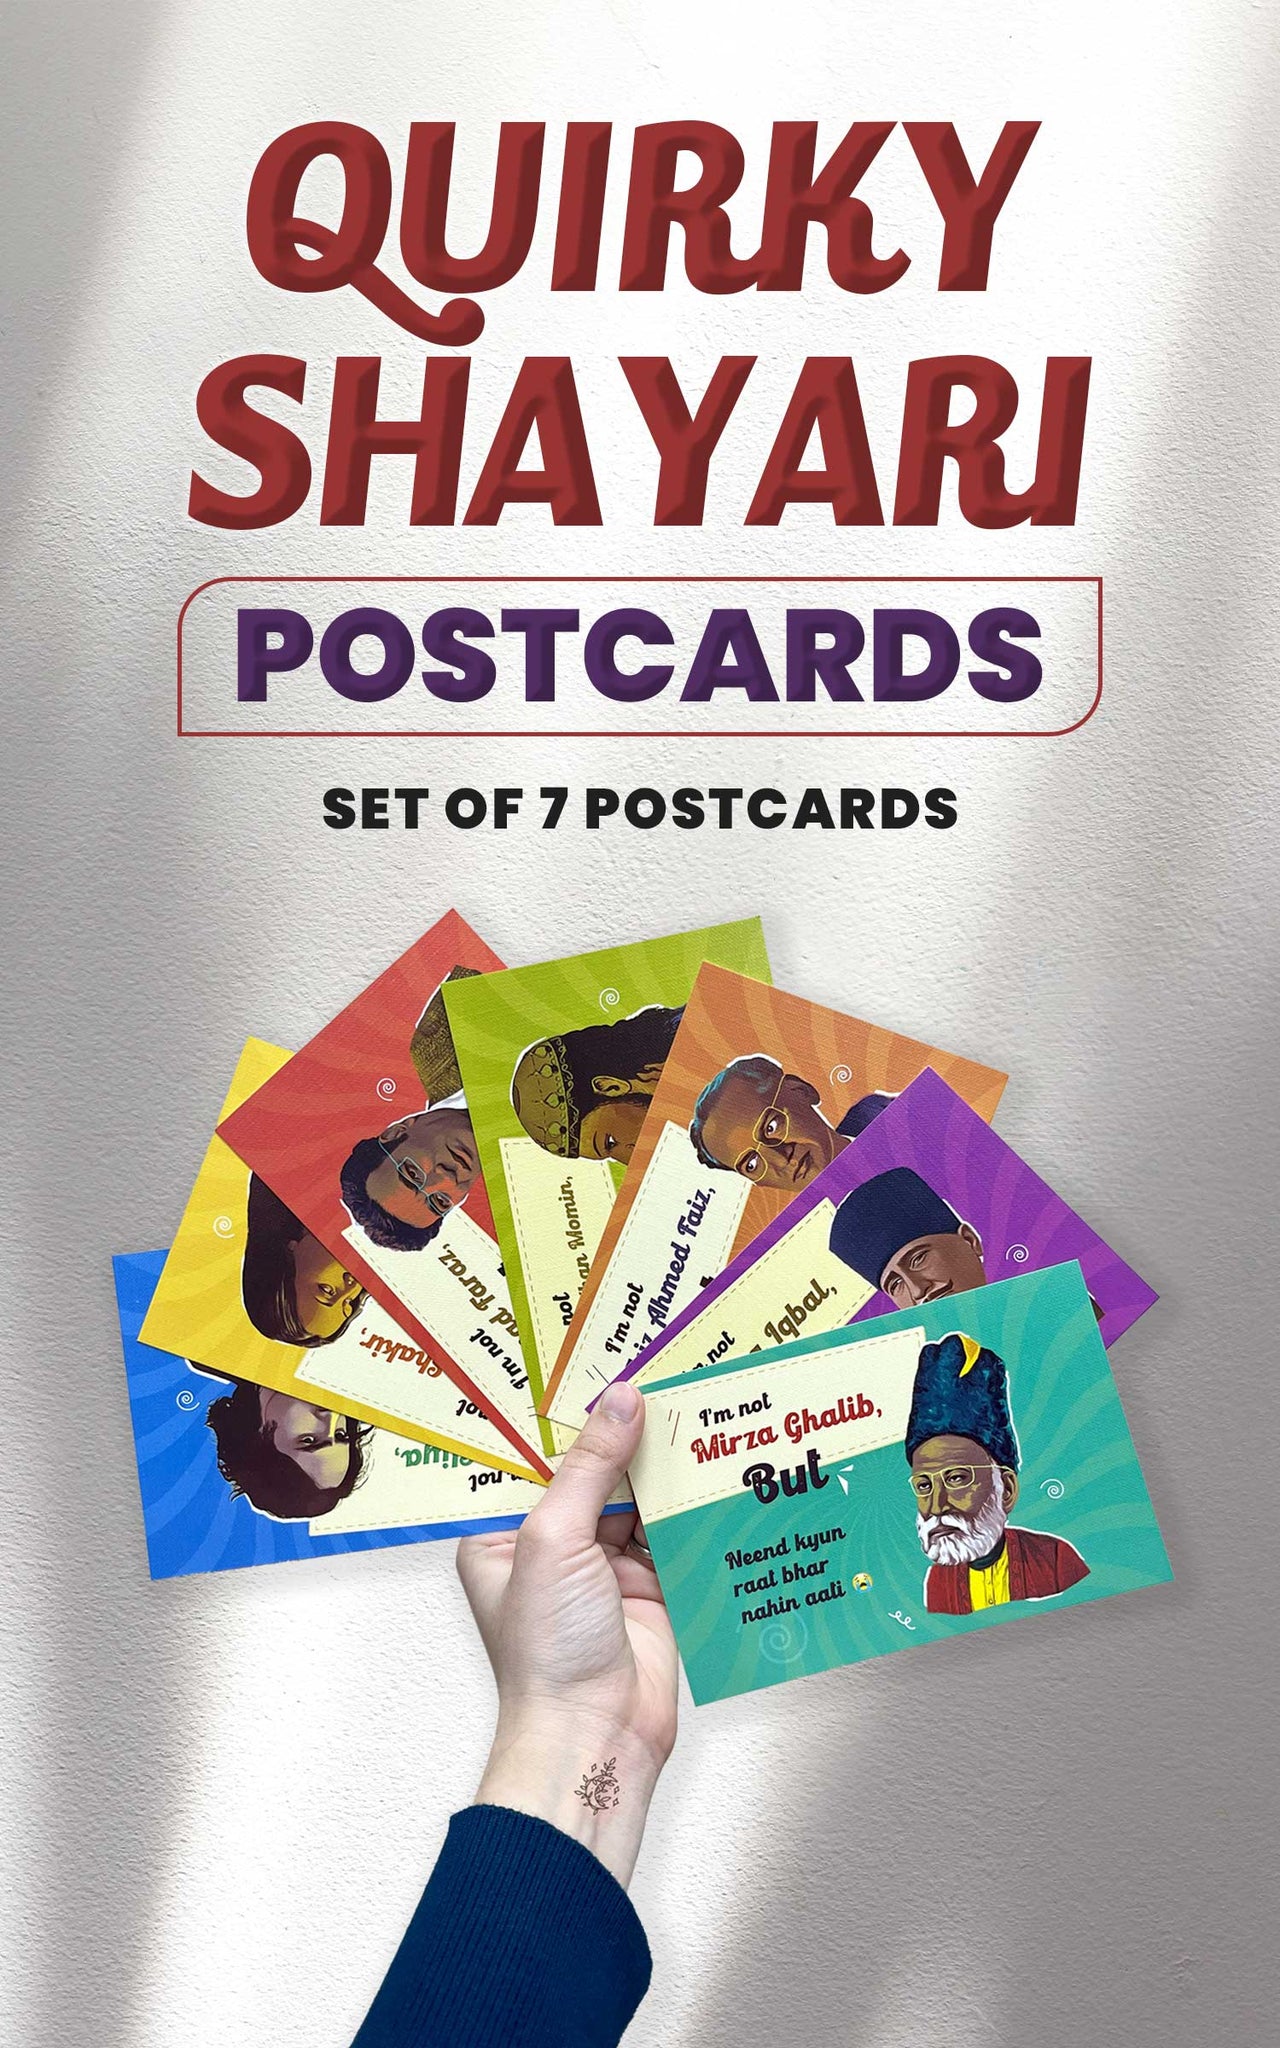 Quirky Shayari Postcards – set of 7